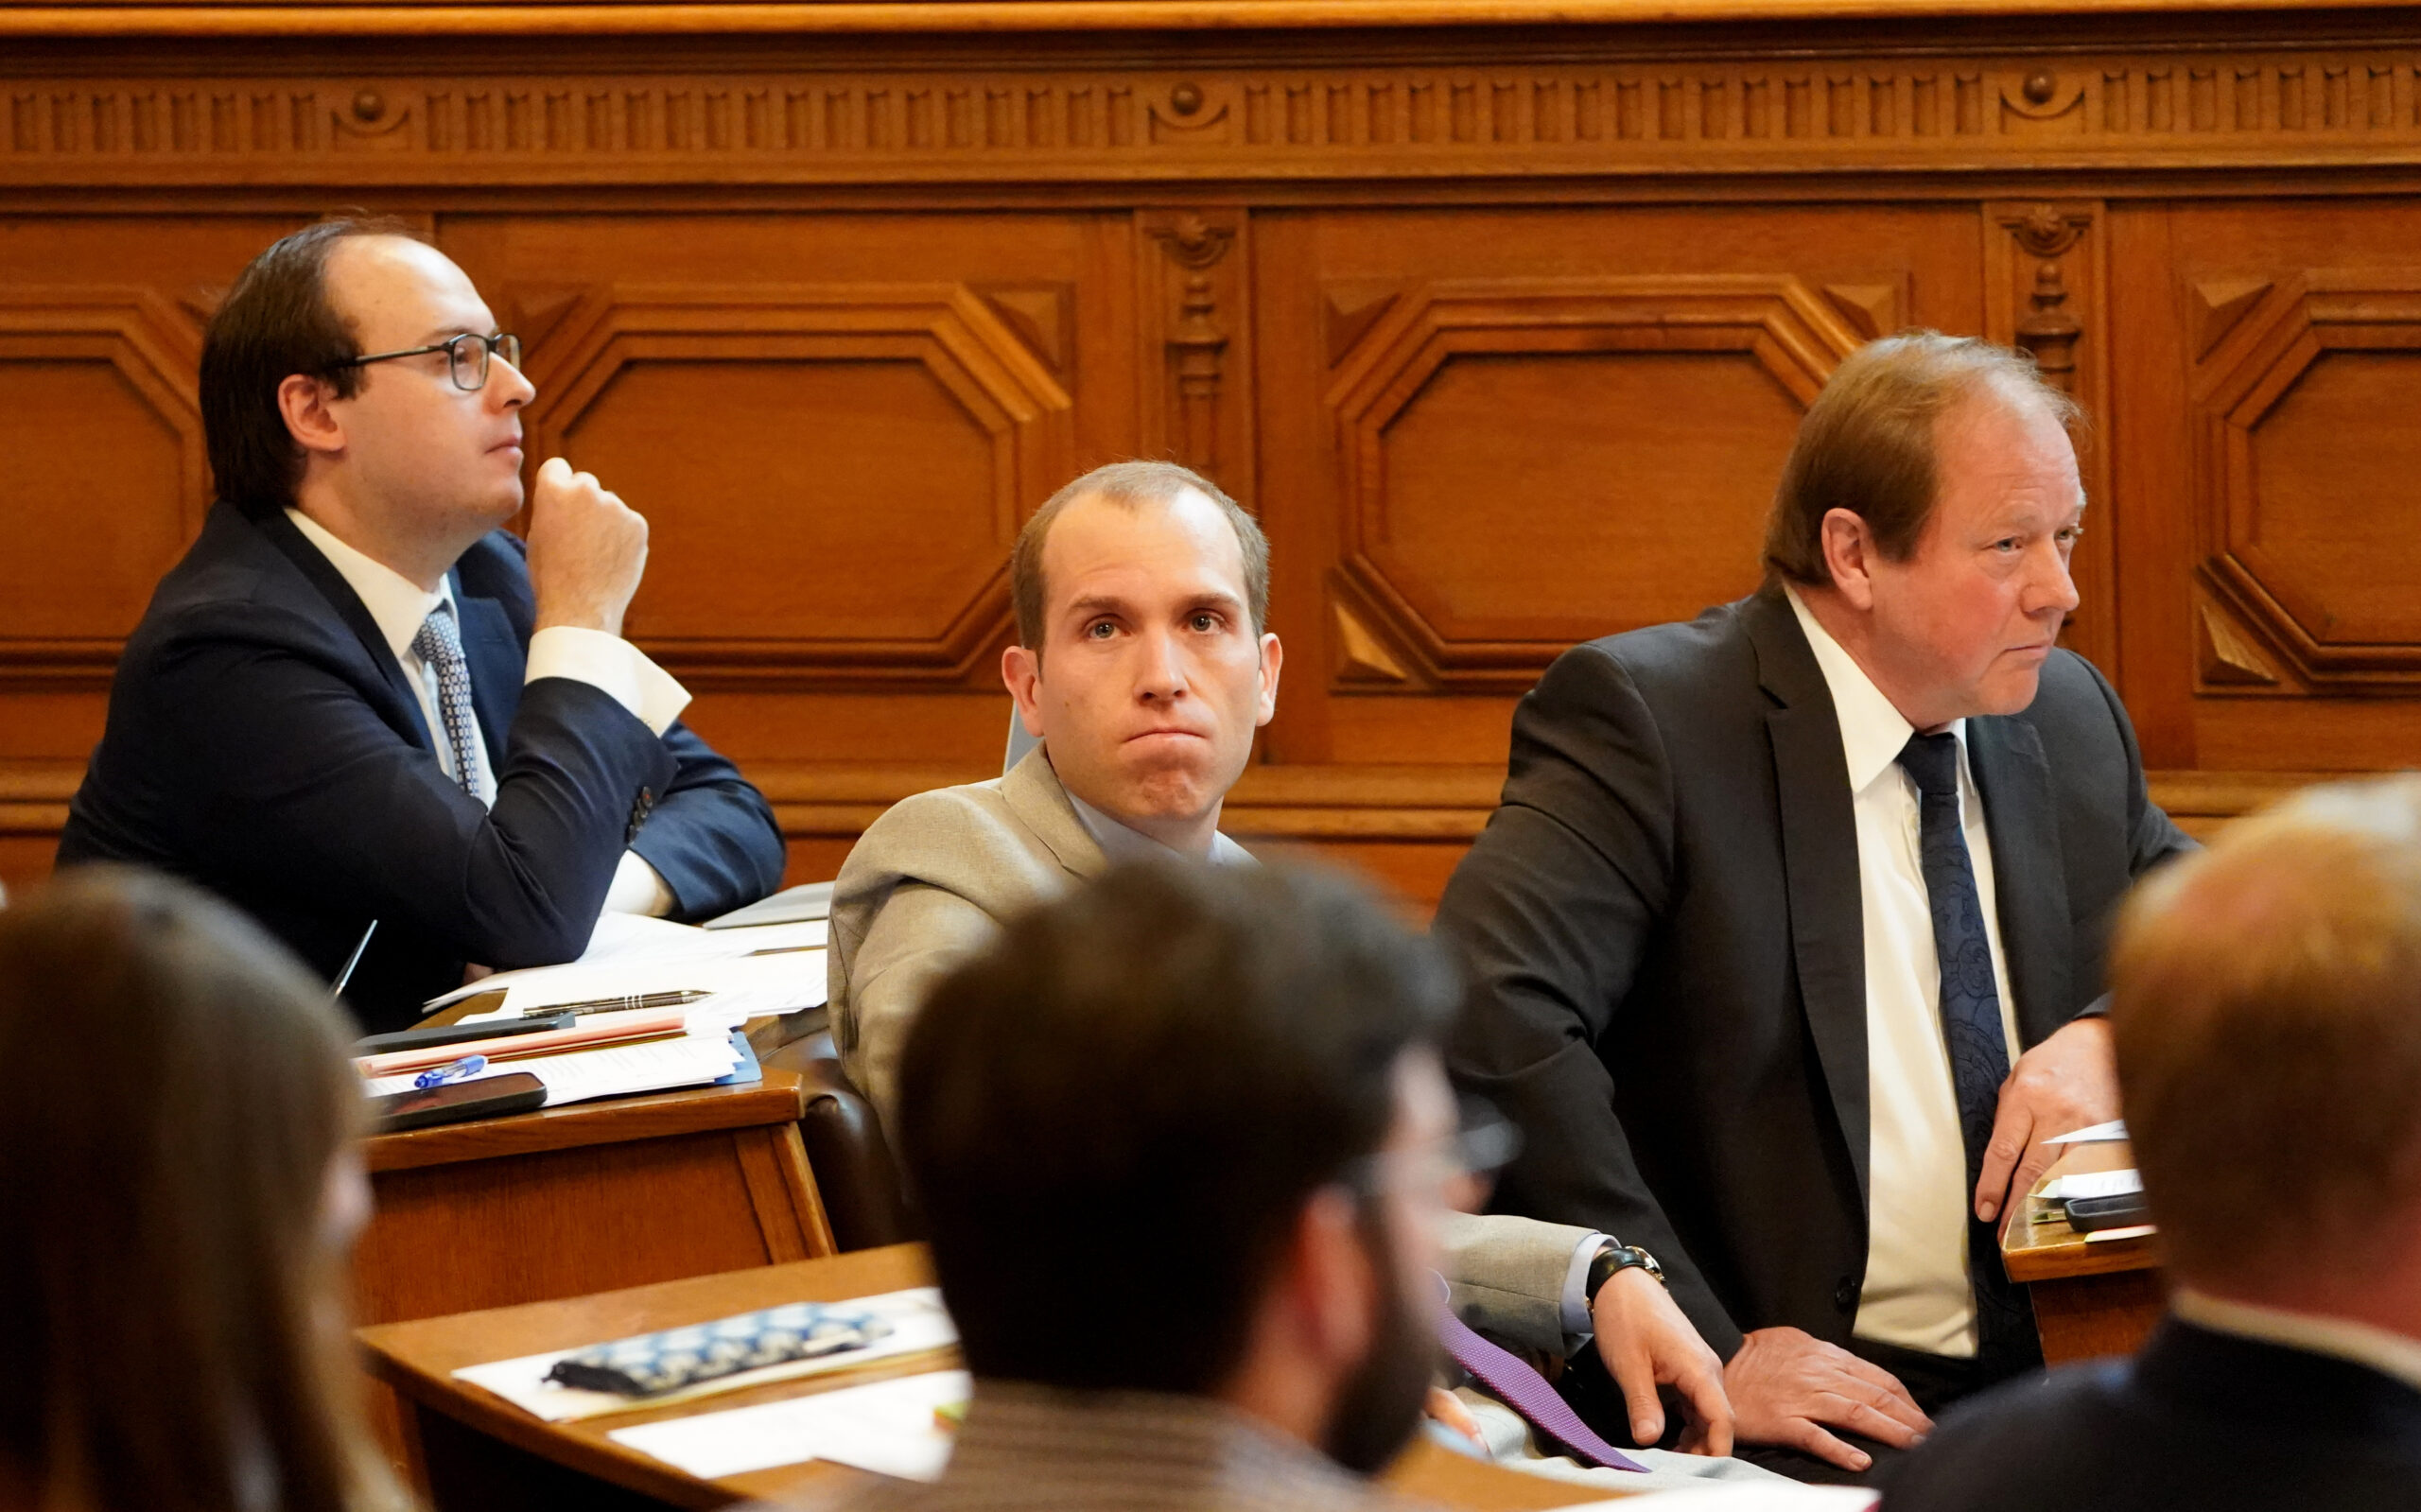 Dennis Thering (Mitte), Fraktionsvorsitzender der CDU in der Hamburgischen Bürgerschaft, sitzt zwischen den AfD-Abgeordneten Krzysztof Walczak (l) und Dirk Nockemann, Fraktionsvorsitzender der AfD.